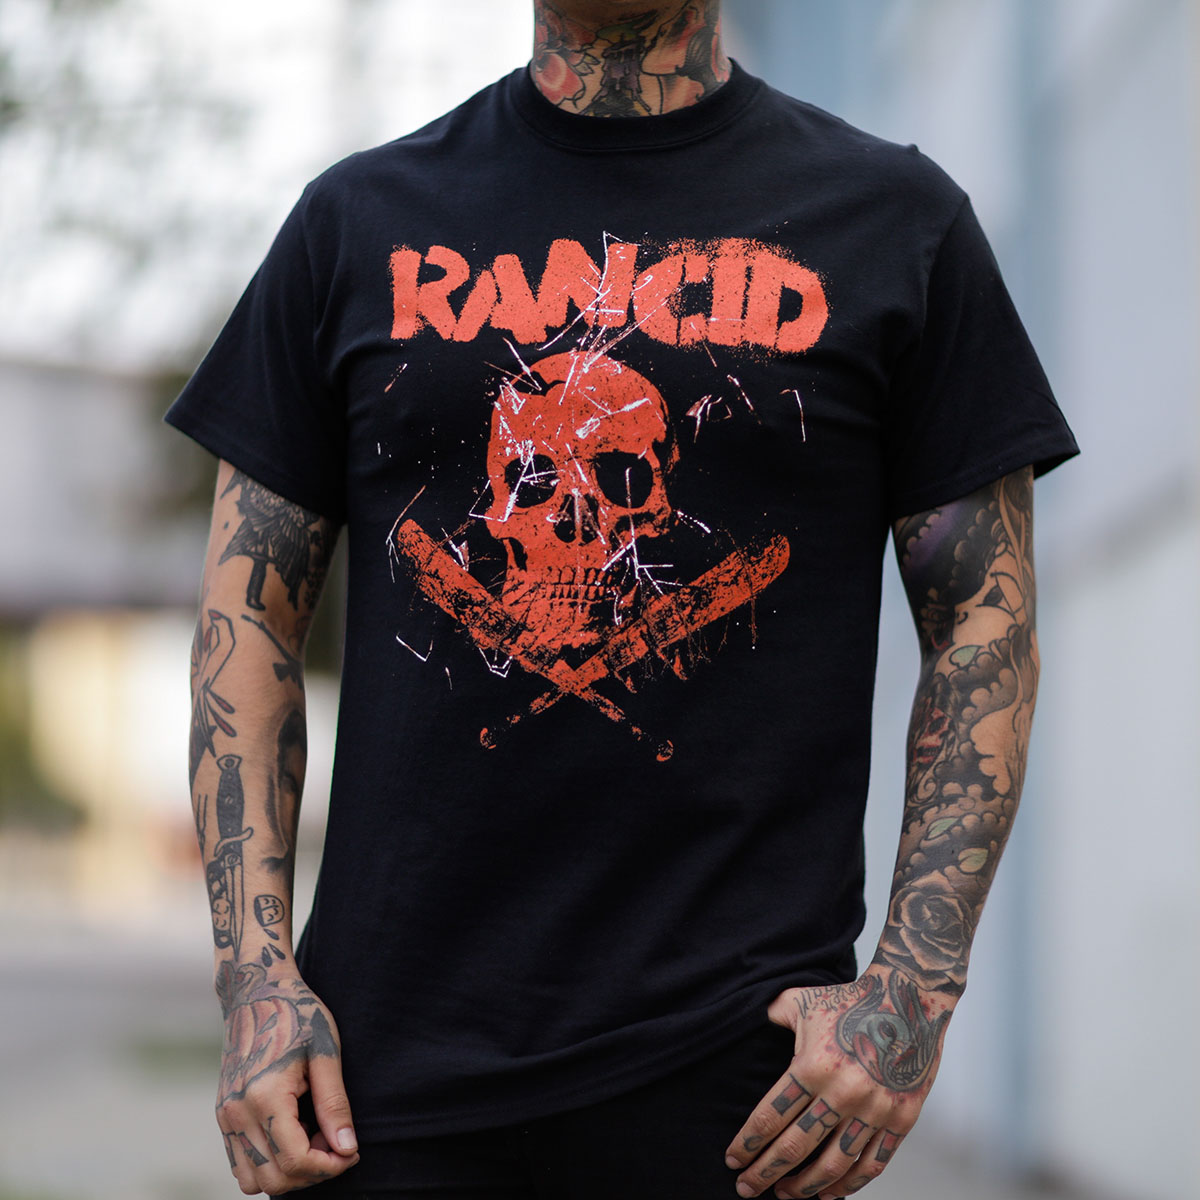 Rancid- Skull & Bats on a black shirt